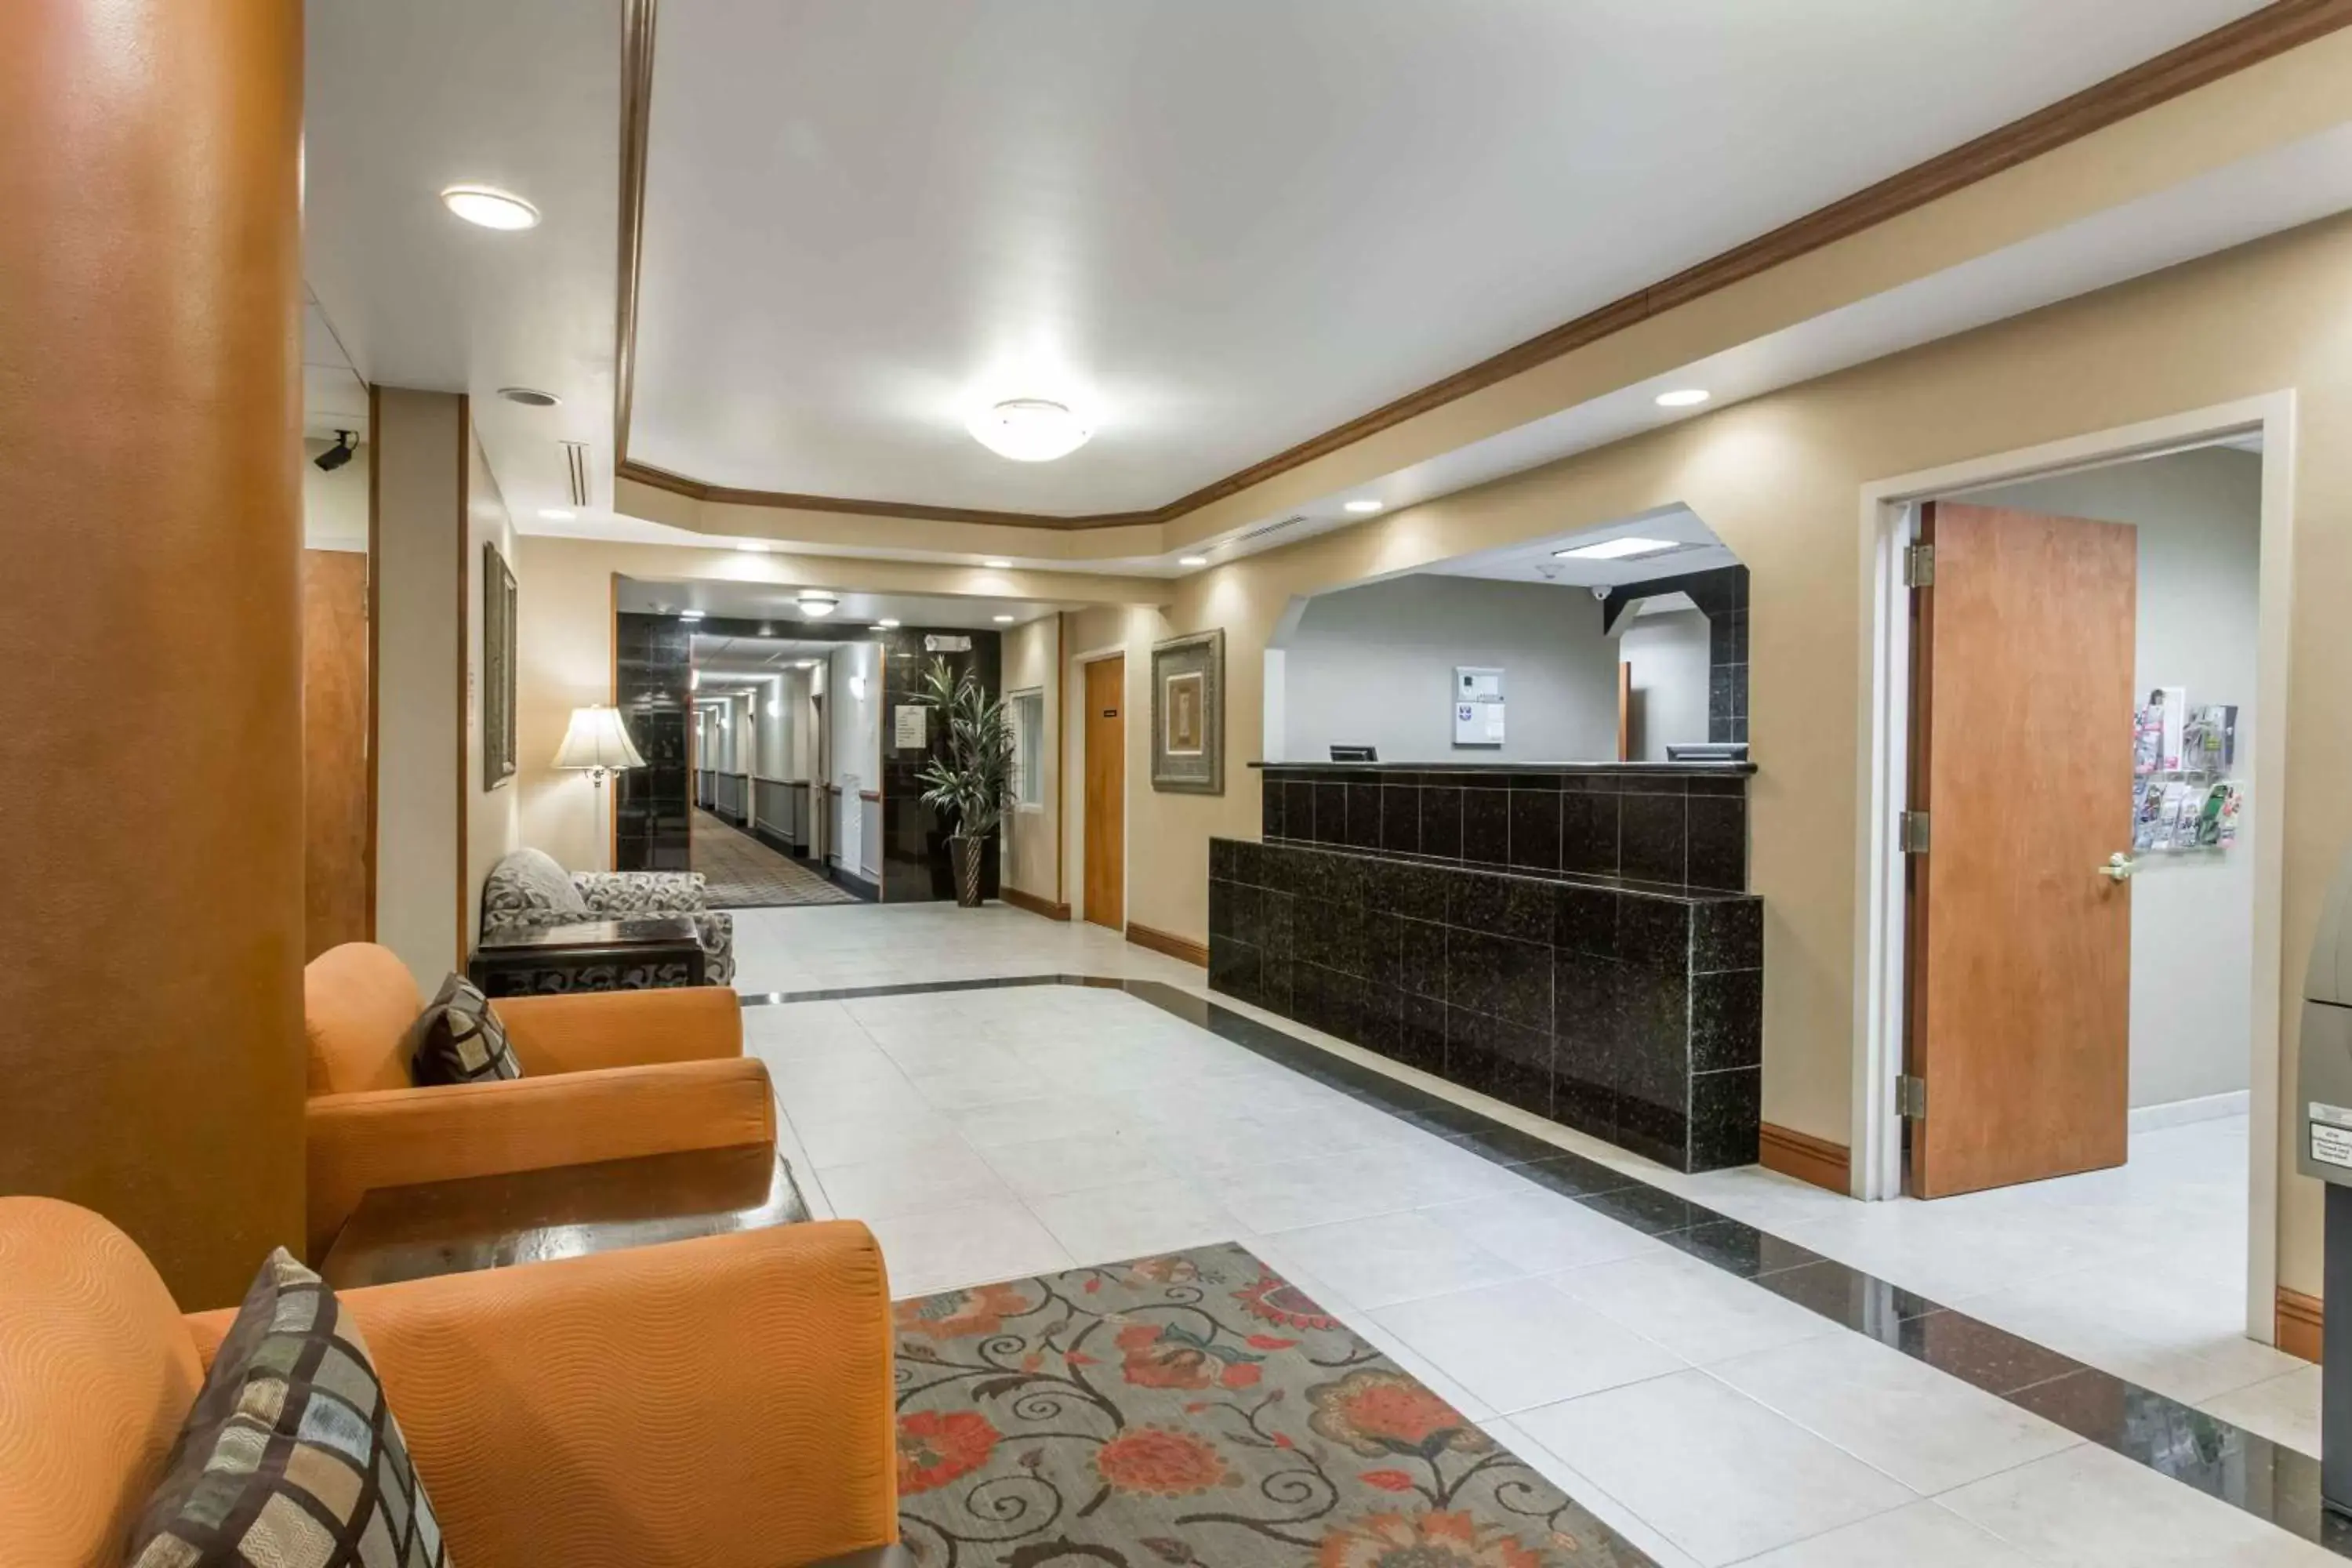 Lobby or reception, Lobby/Reception in Days Inn & Suites by Wyndham Fort Pierce I-95